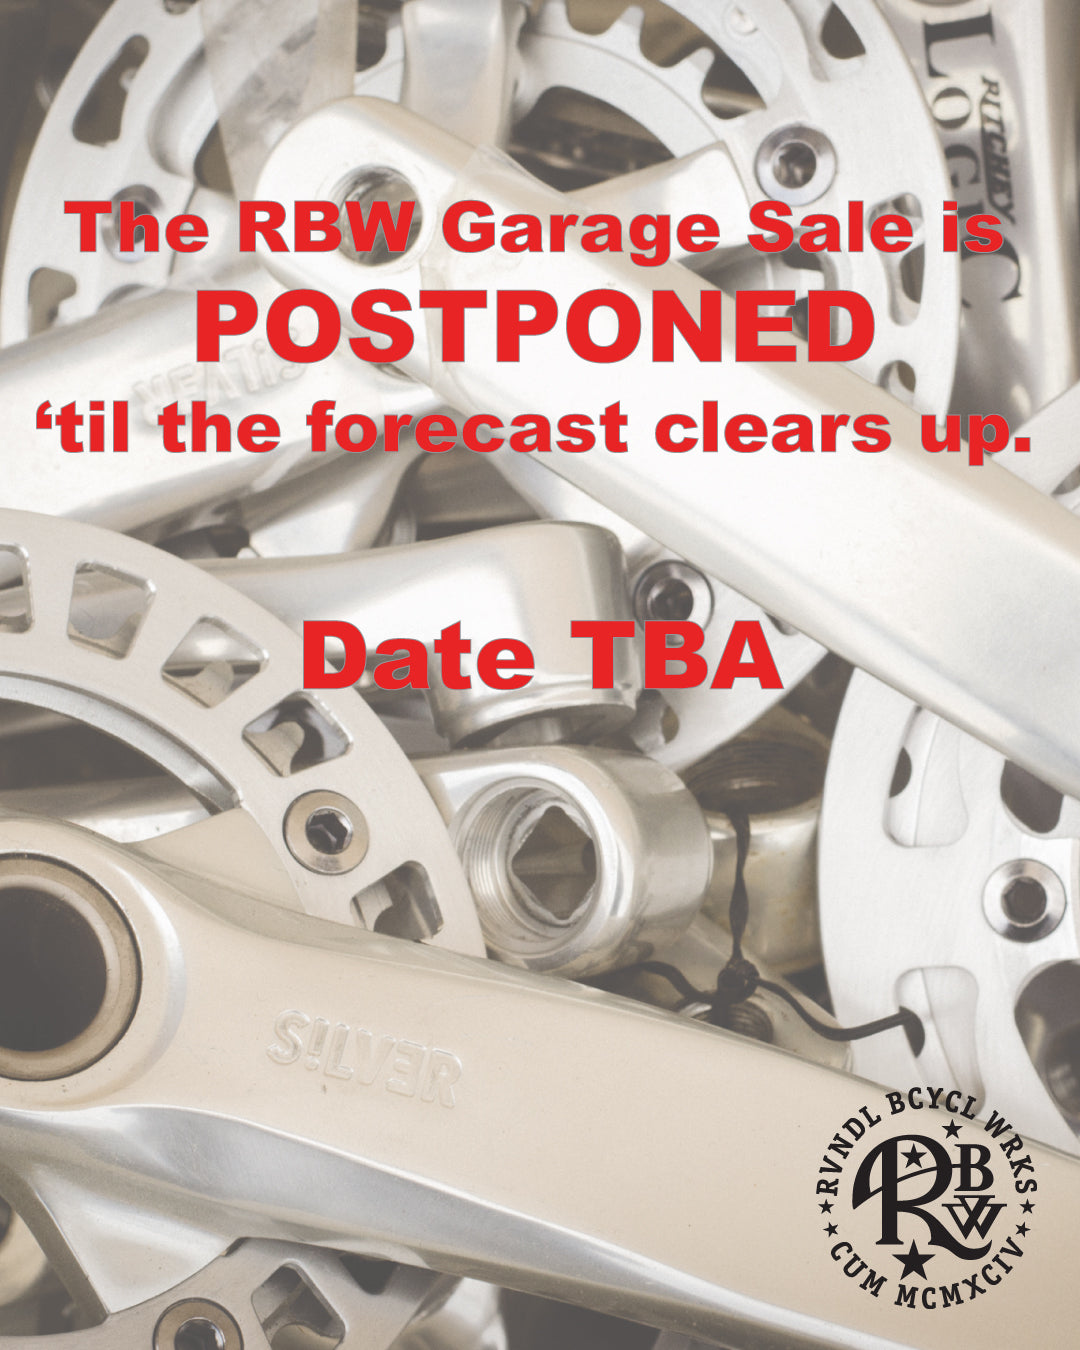 The Garage Sale is postponed